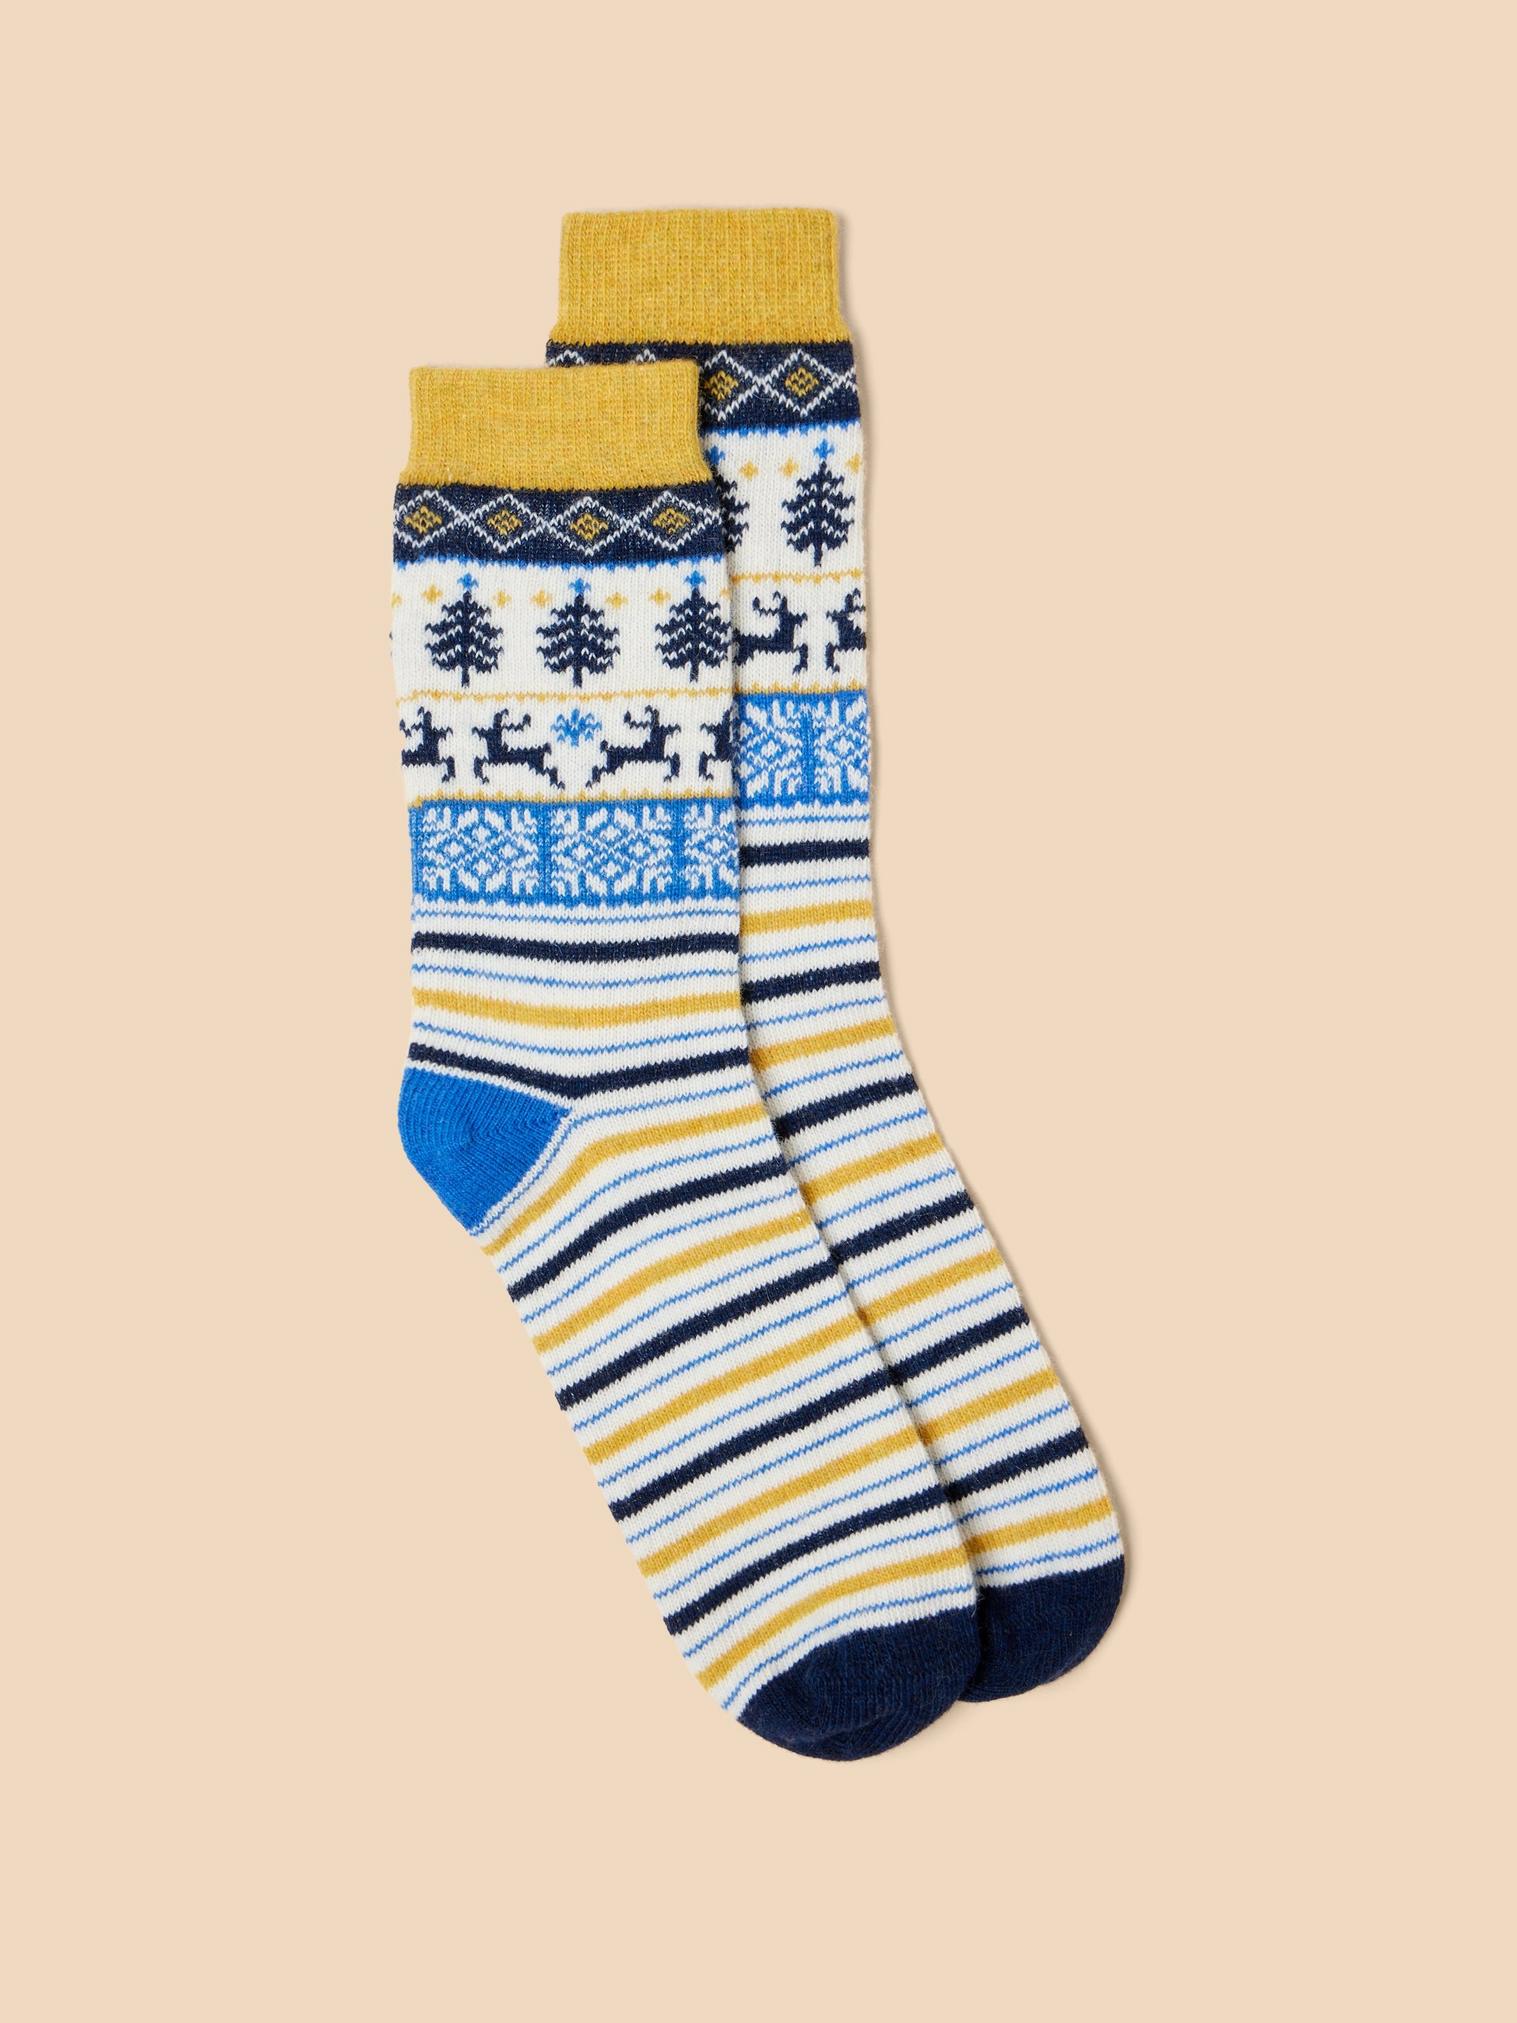 Reindeer Wool Mix Socks in NAVY MULTI - FLAT FRONT